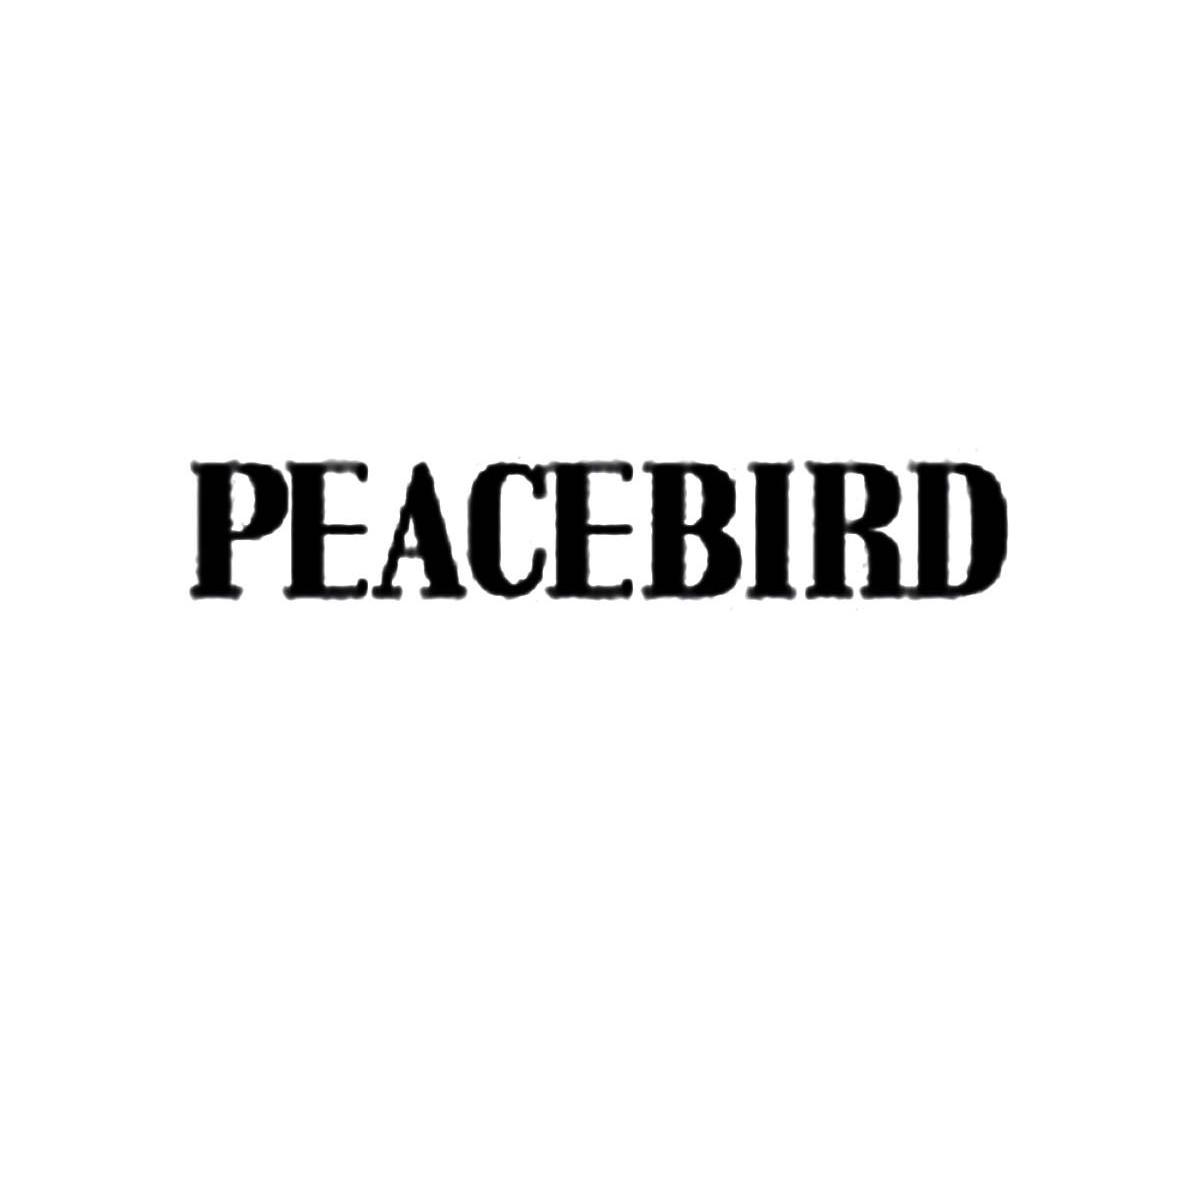 商标文字peacebird商标注册号 11965502,商标申请人太平鸟集团有限